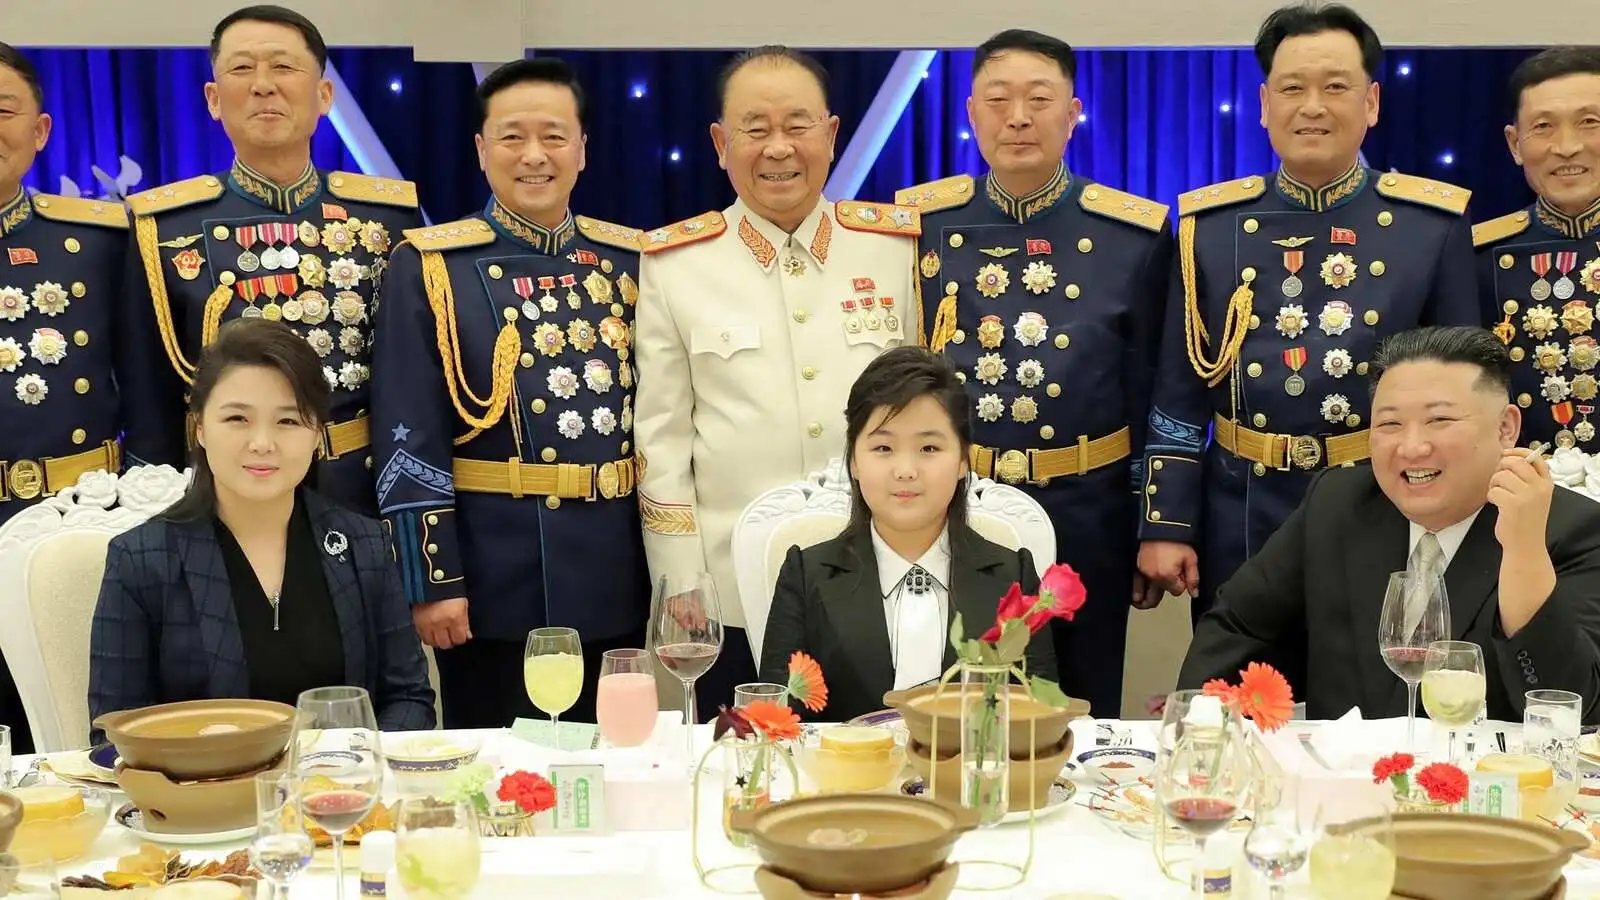 Kim Jong-Un with his wife Ri Sol-Ju and daughter Kim Ju-ae